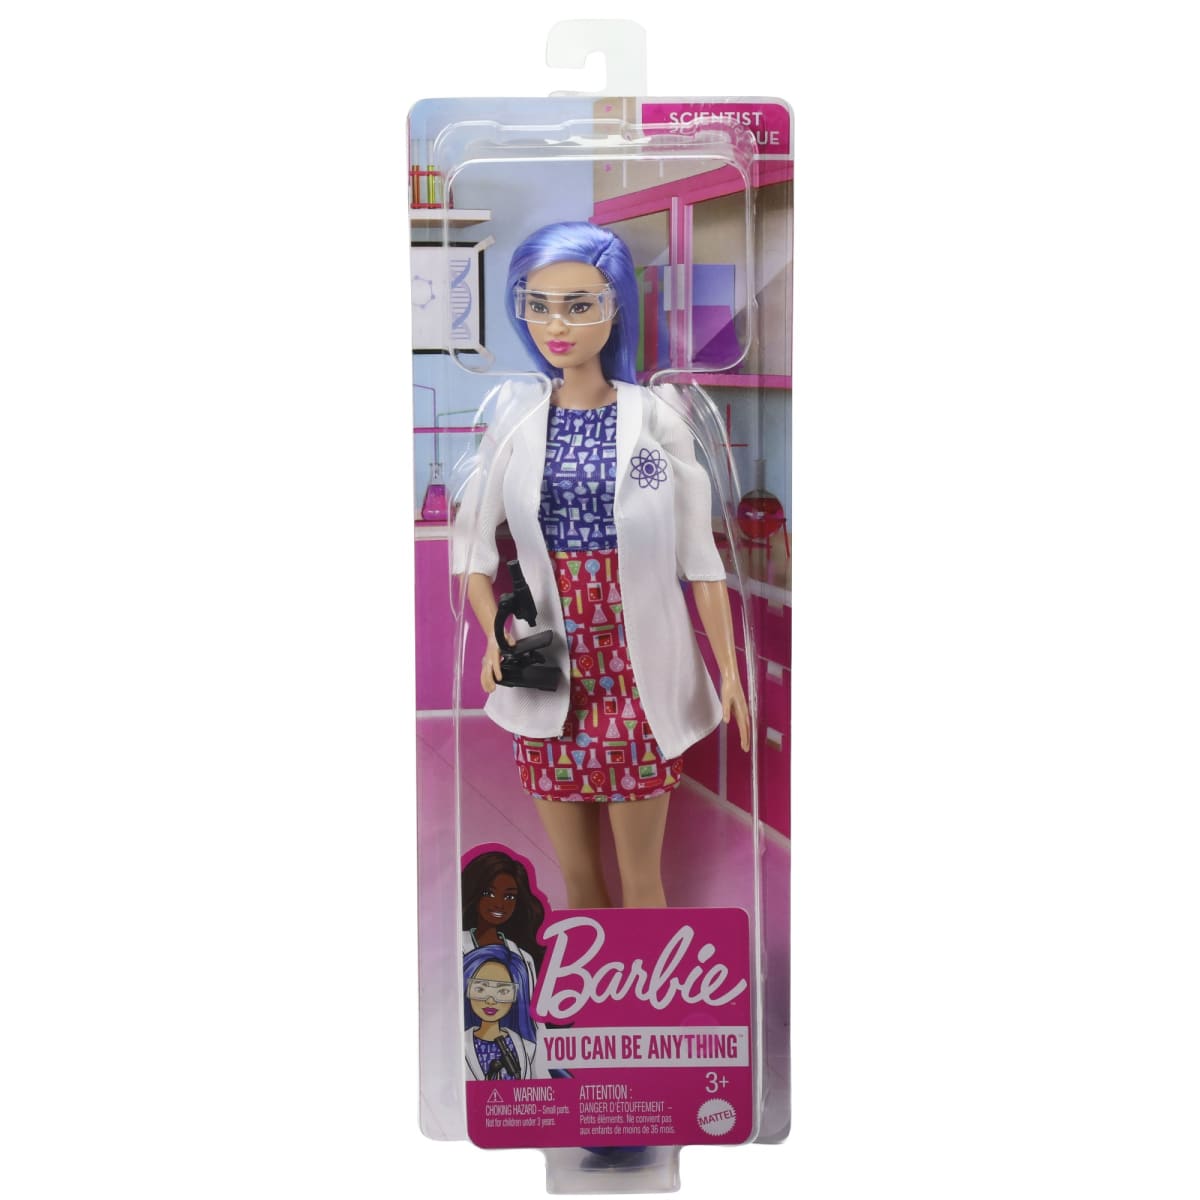 Barbie Scientist nukke  verkkokauppa